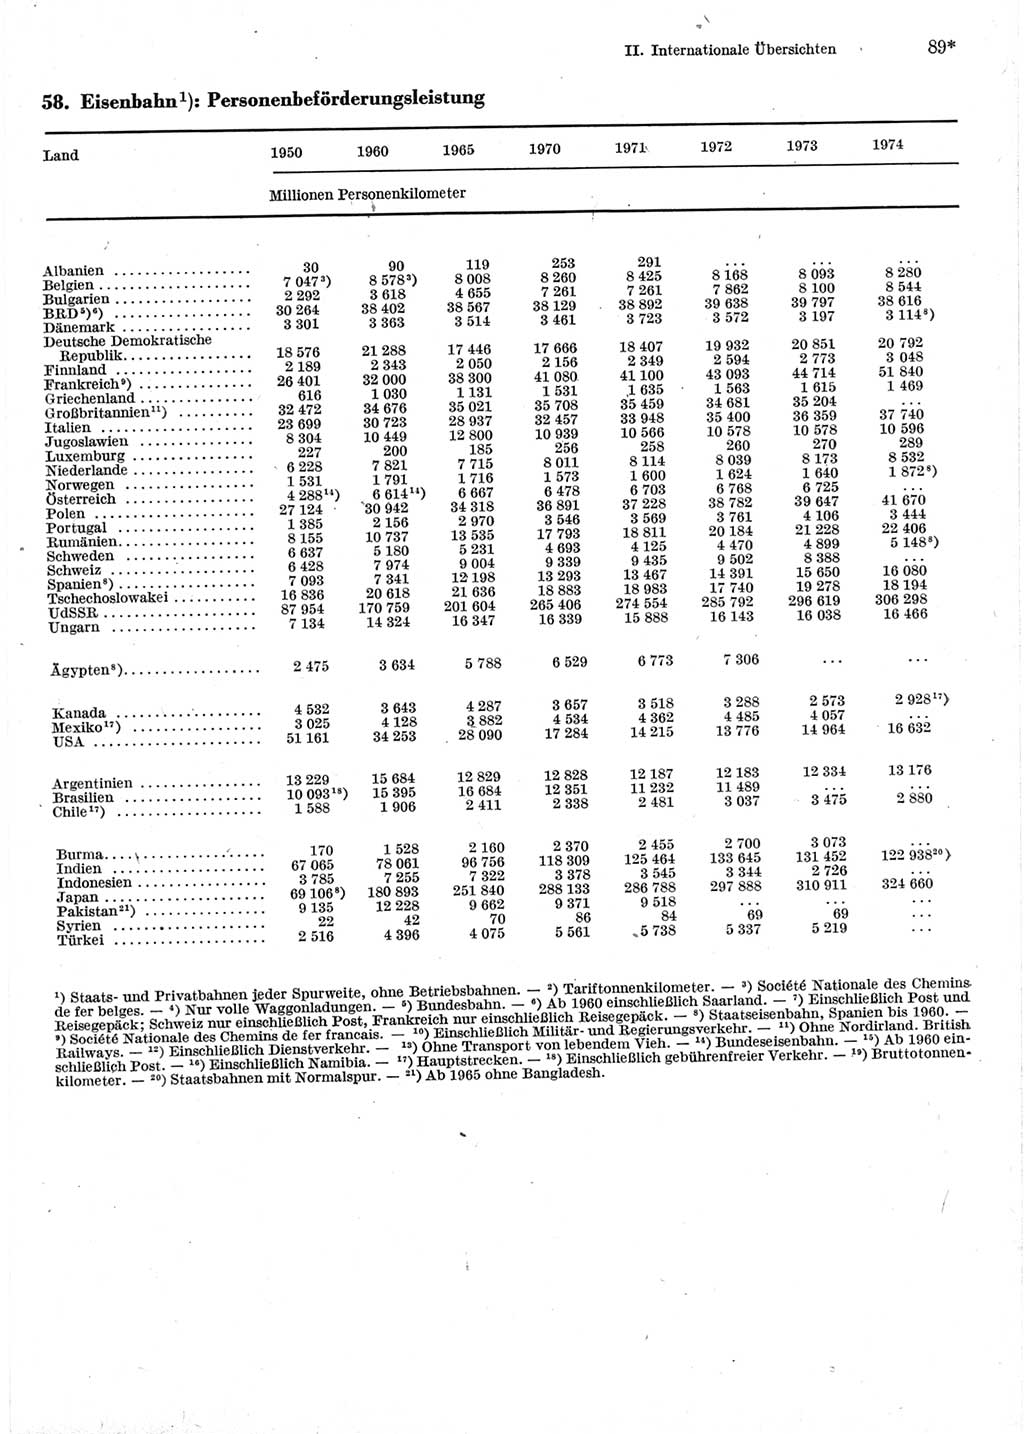 Statistisches Jahrbuch der Deutschen Demokratischen Republik (DDR) 1976, Seite 89 (Stat. Jb. DDR 1976, S. 89)